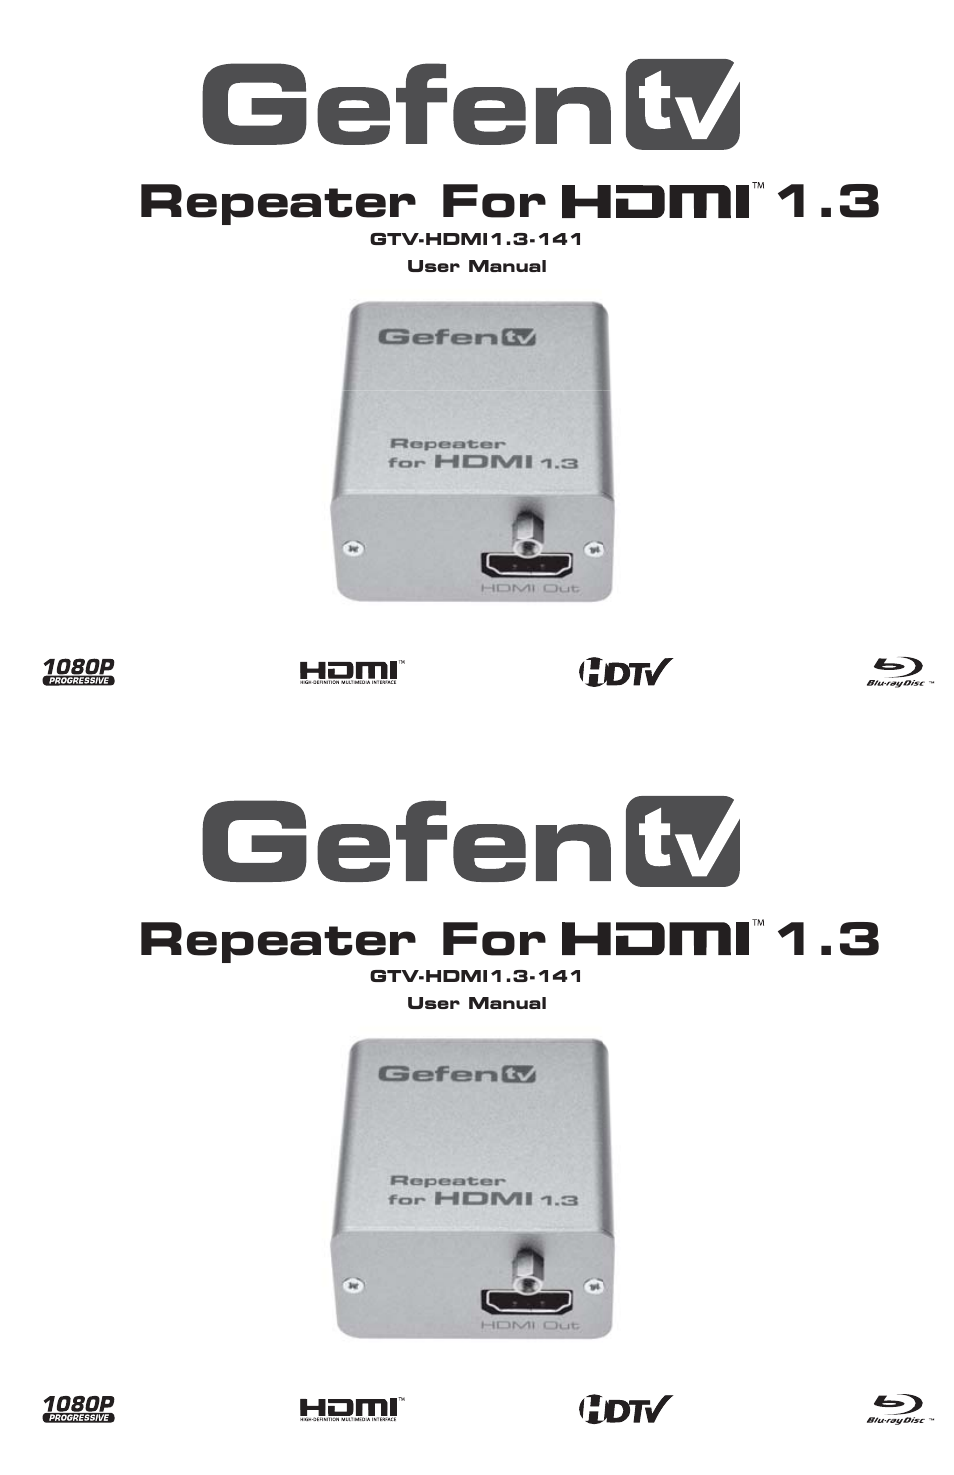 Repeater For HDMI 1.3 GTV-HDMI1.3-141